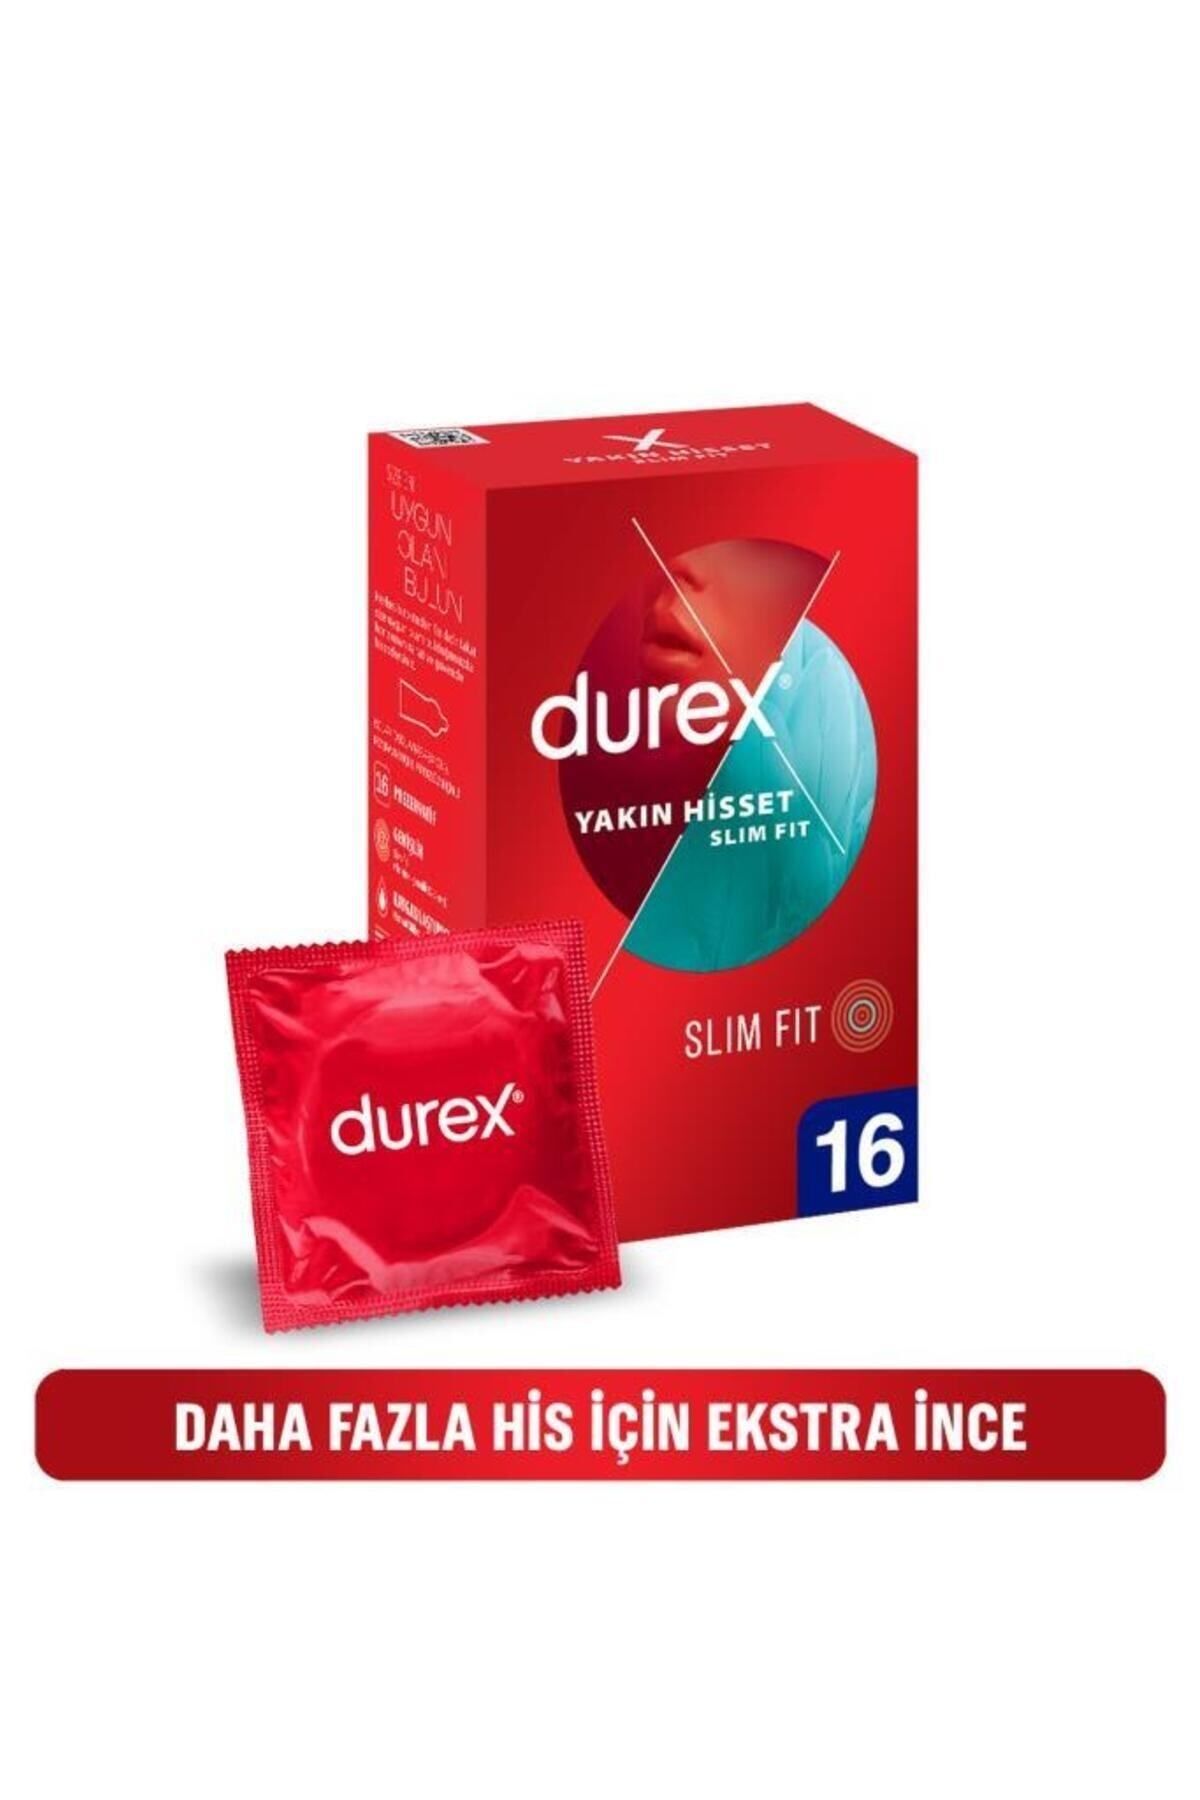 Durex Yakın Hisset Slim Fit, Ince 16'lı Prezervatif